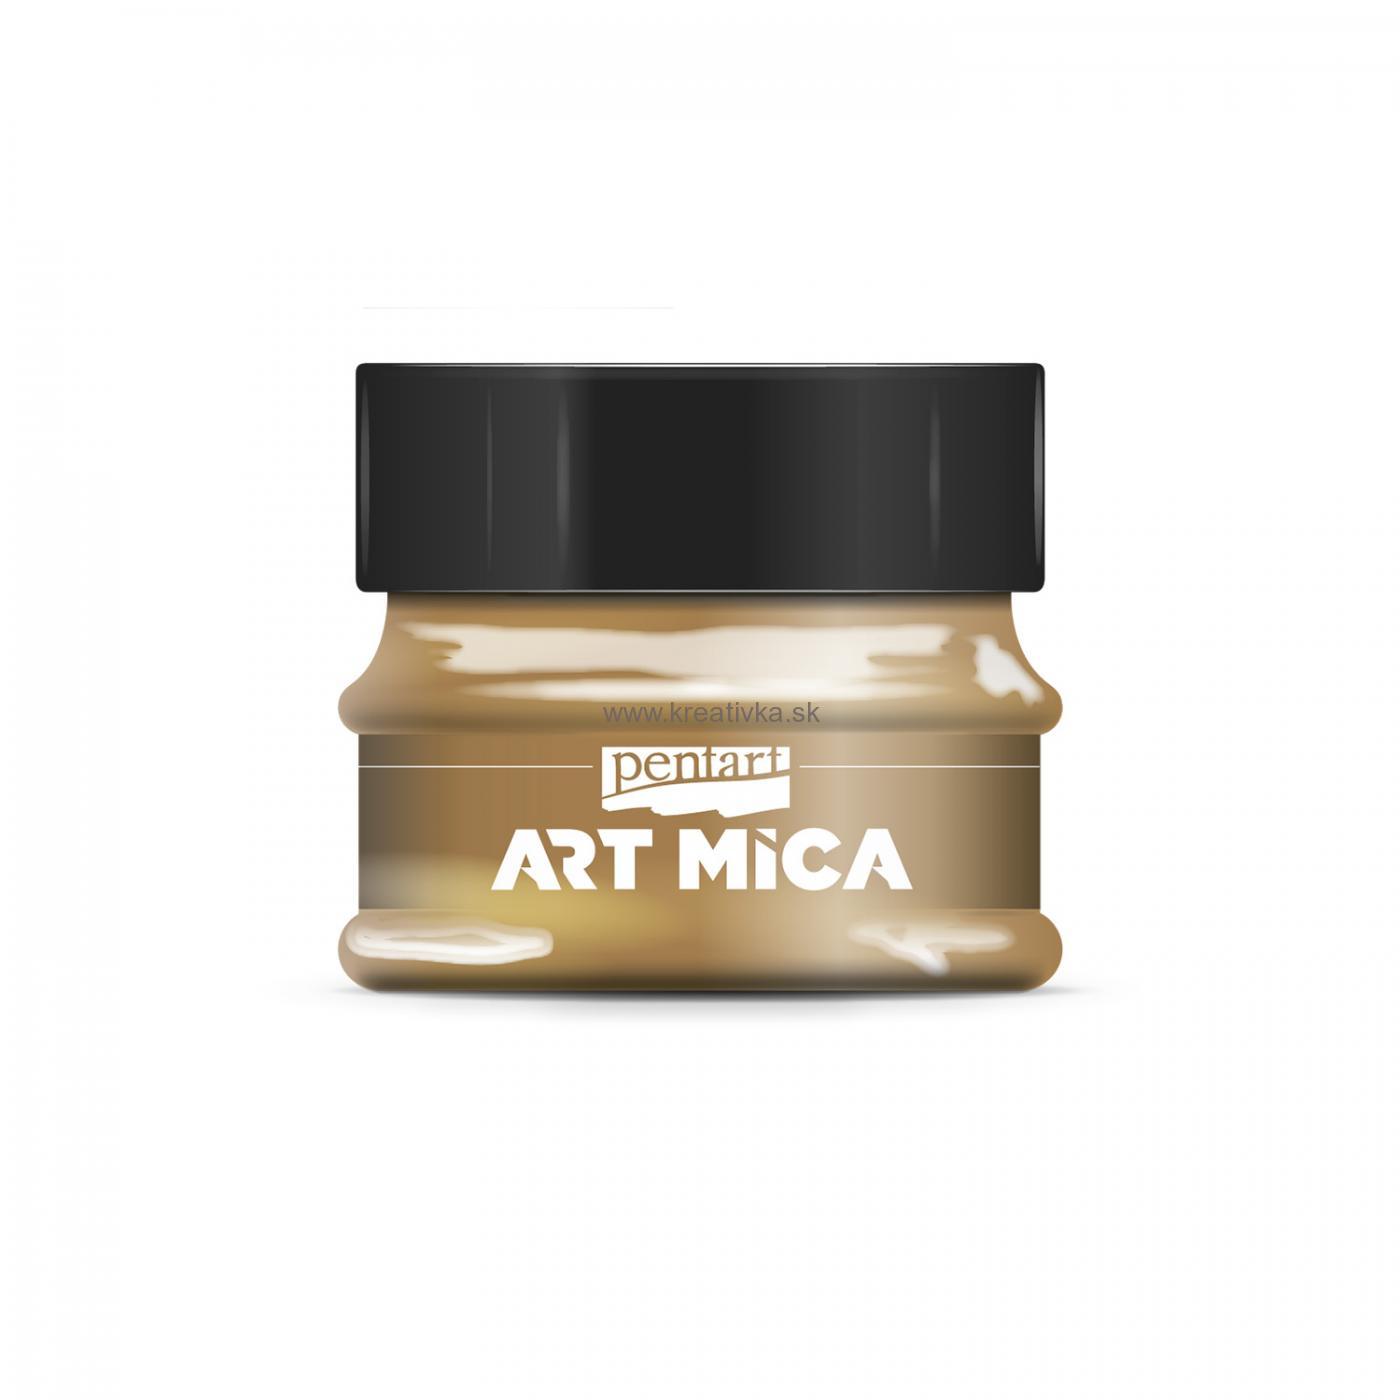 ART MICA minerálny práškový pigment, 9g, zlatohneda